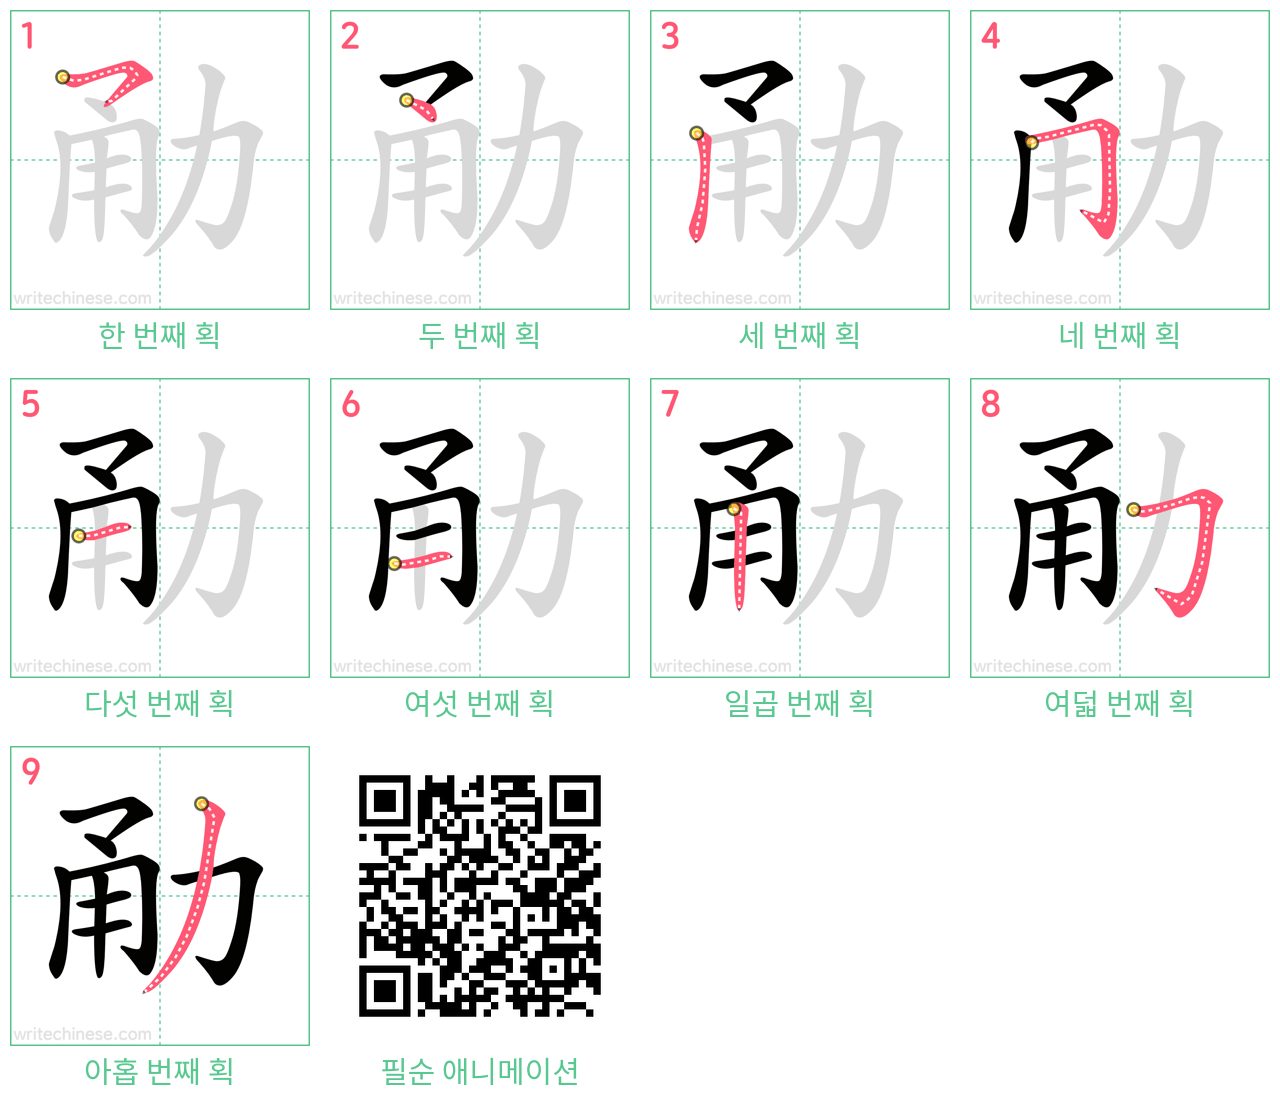 勈 step-by-step stroke order diagrams